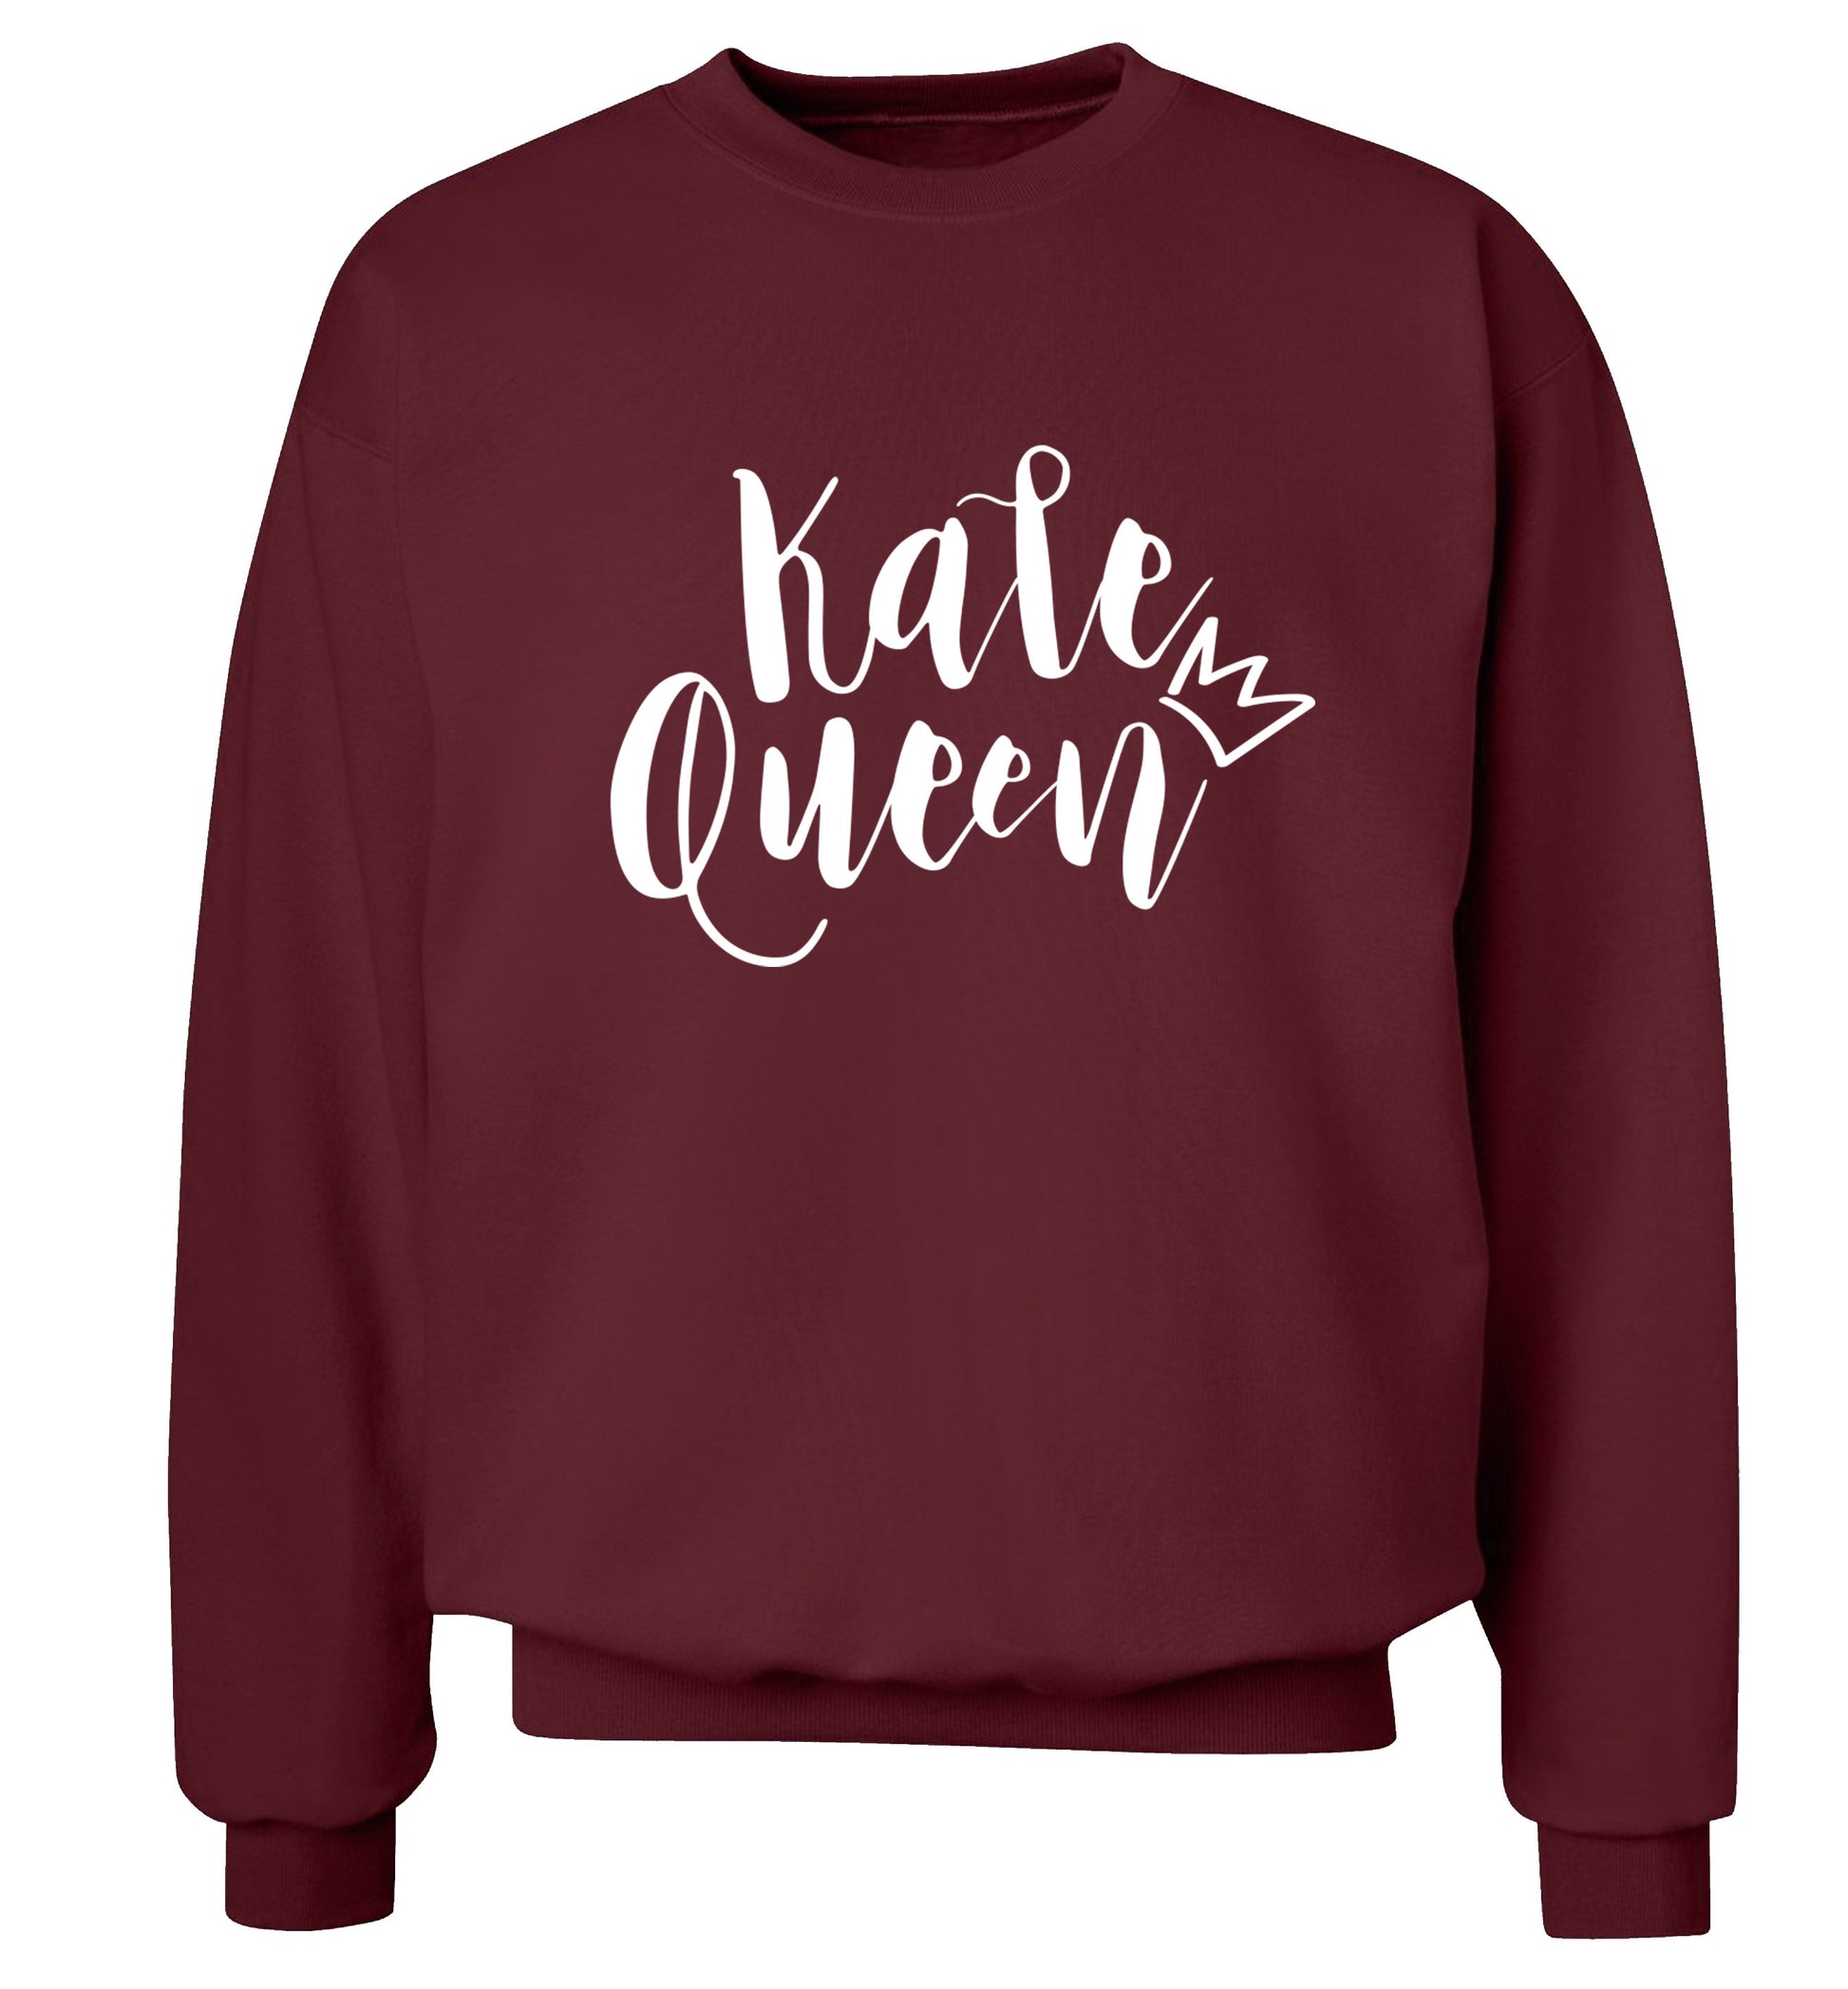 Kale Queen Adult's unisex maroon  sweater 2XL